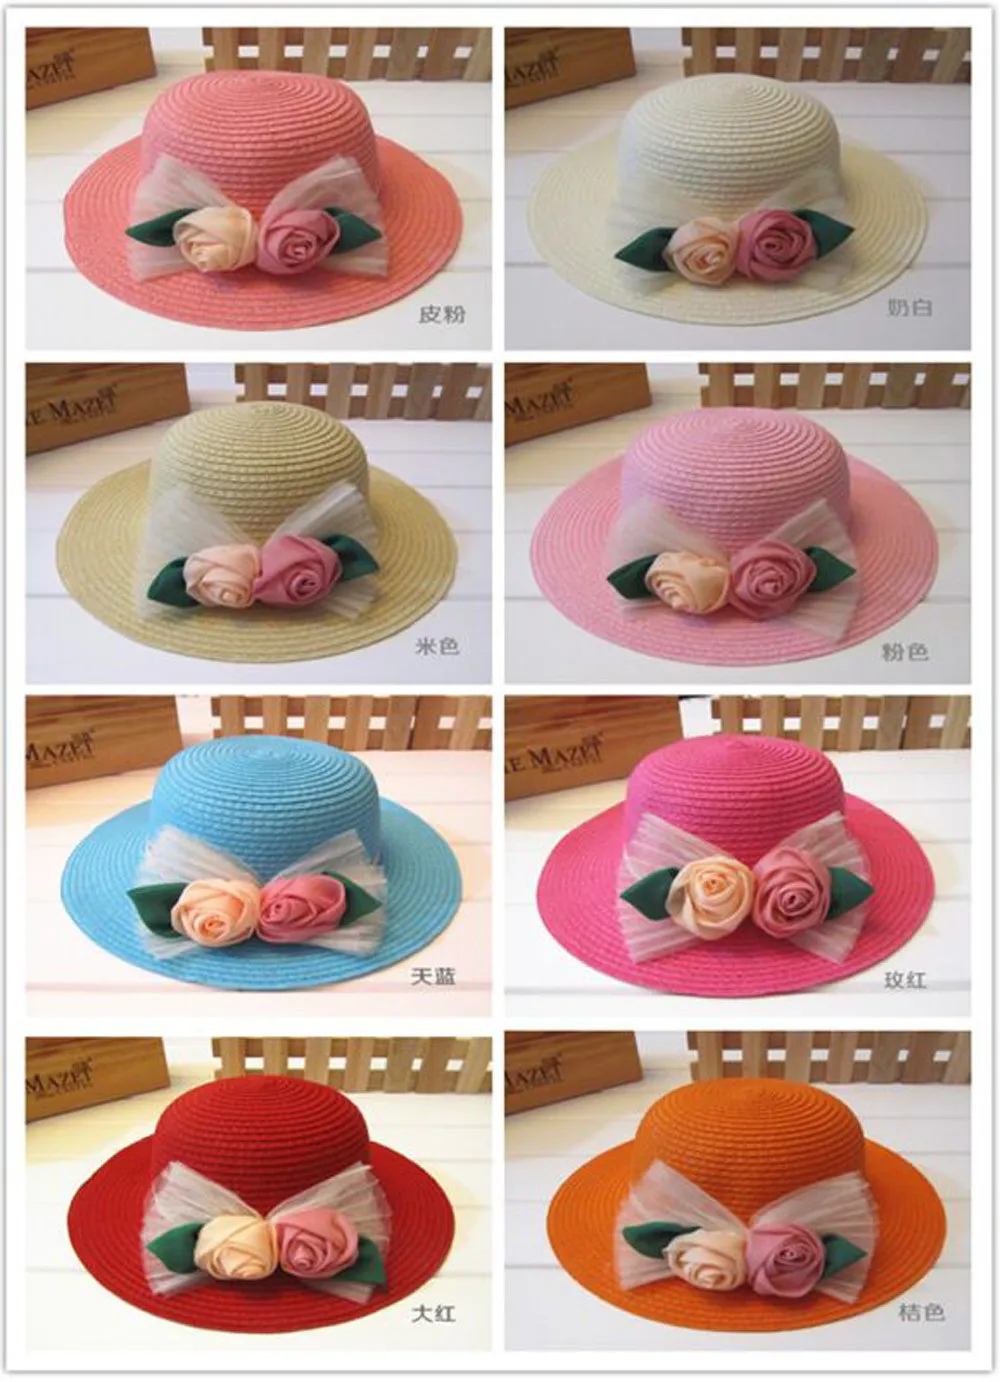 1 шт., новинка, Детская шляпа для защиты от солнца с двумя розами, весенне-летняя Солнцезащитная соломенная шляпа для женщин и девочек, детские шапочки, 8 цветов